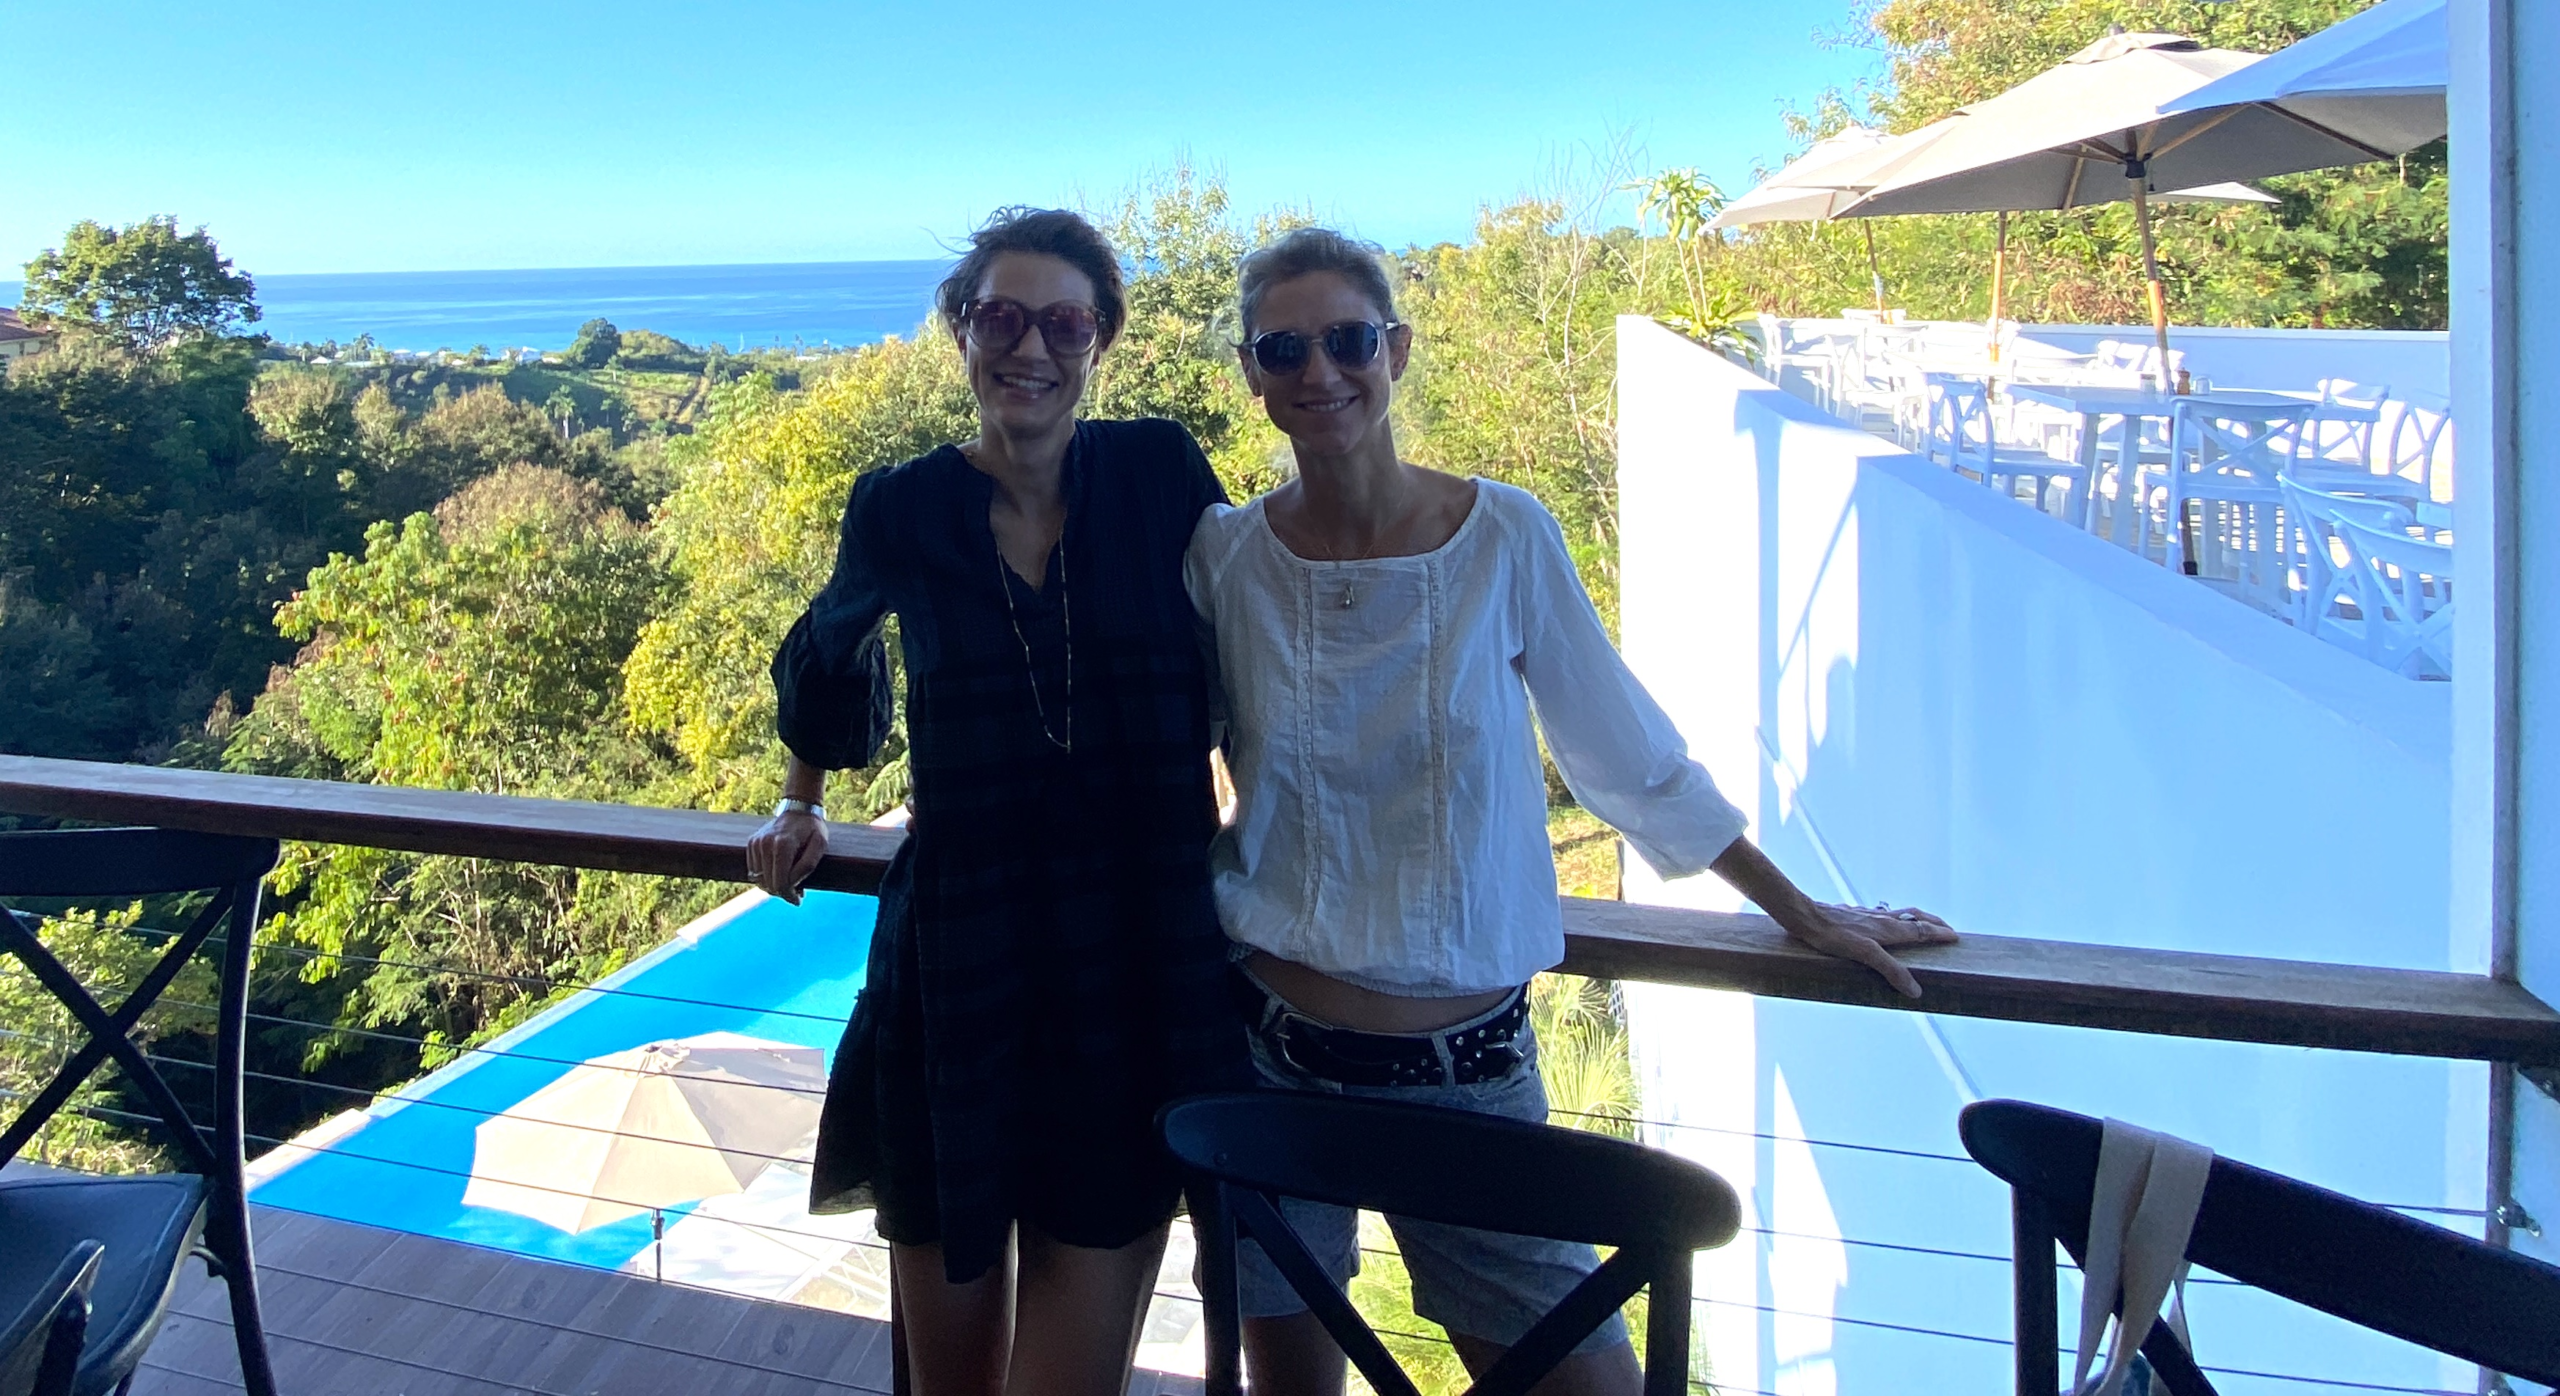 Autorin Sonja und Tippgeberin Verena, die in Barcelona lebt mit ihrer Familie